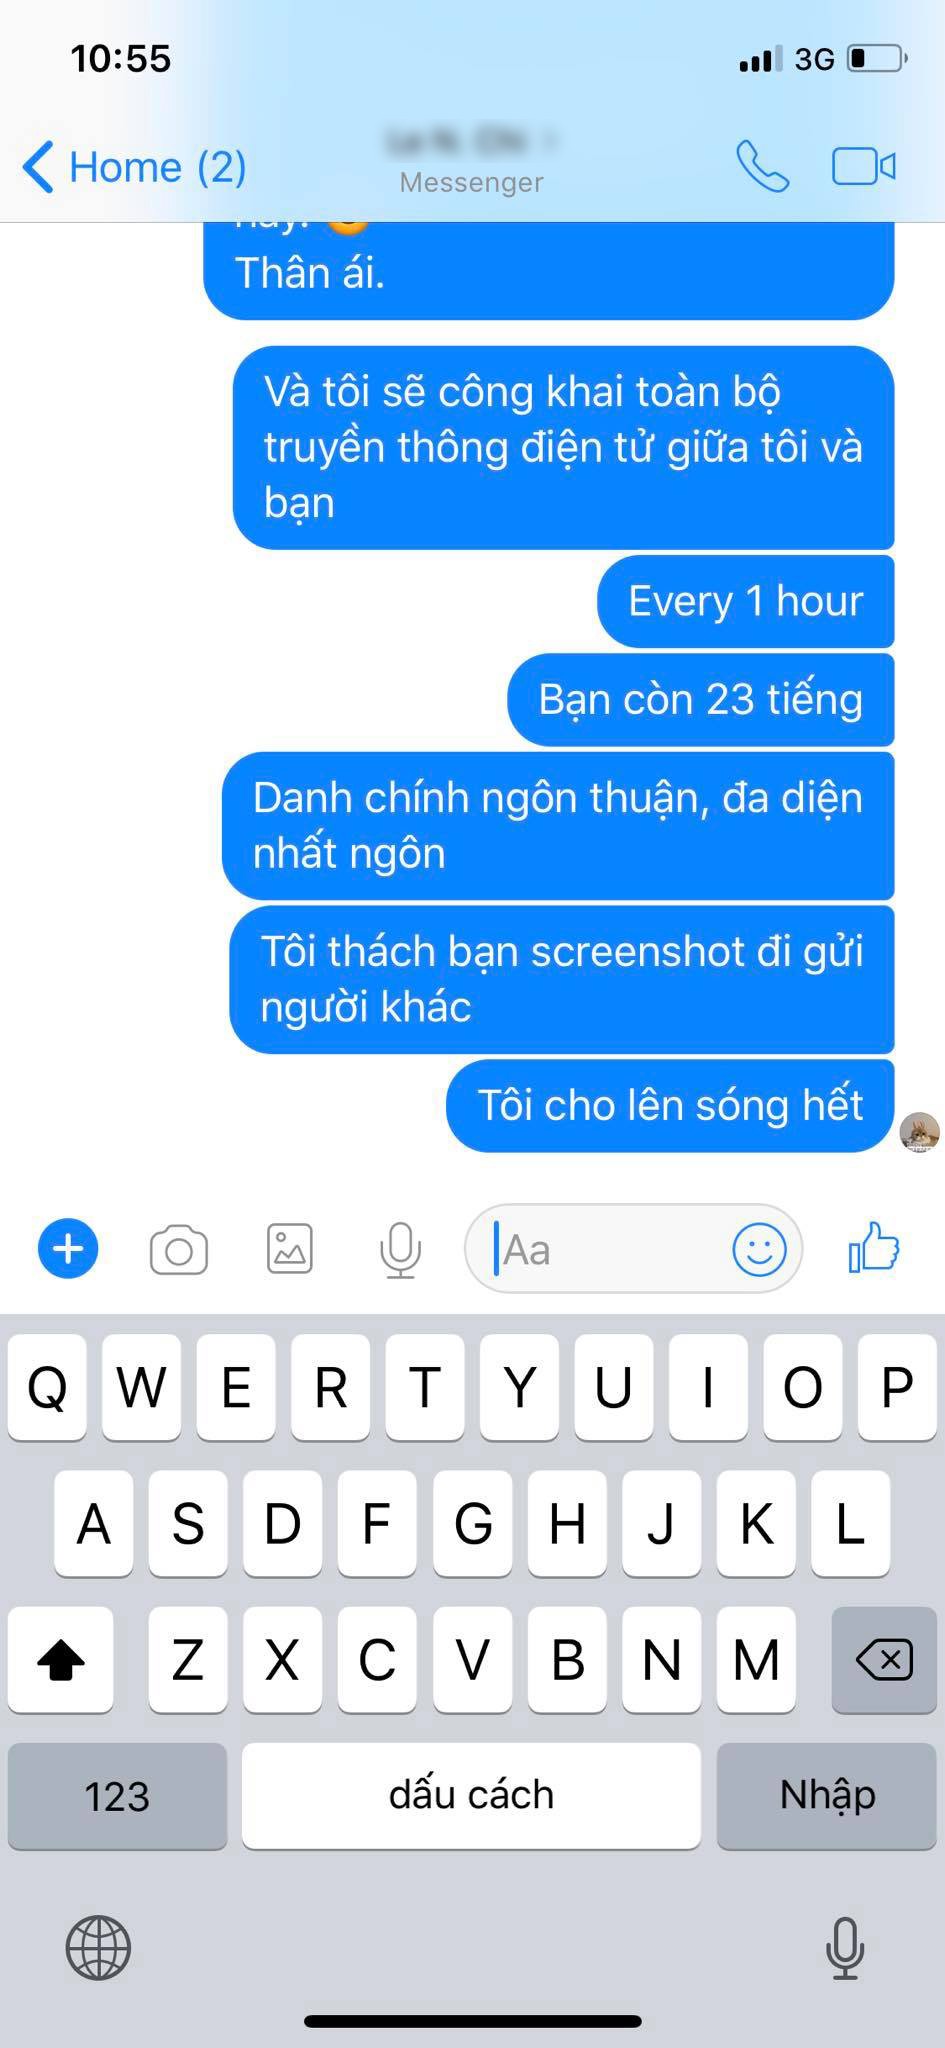 Rocker Nguyễn tung đoạn chat với admin HHSB thật: Chỉ trích và doạ trong 24h phải... giải quyết fanpage HHSB giả 3